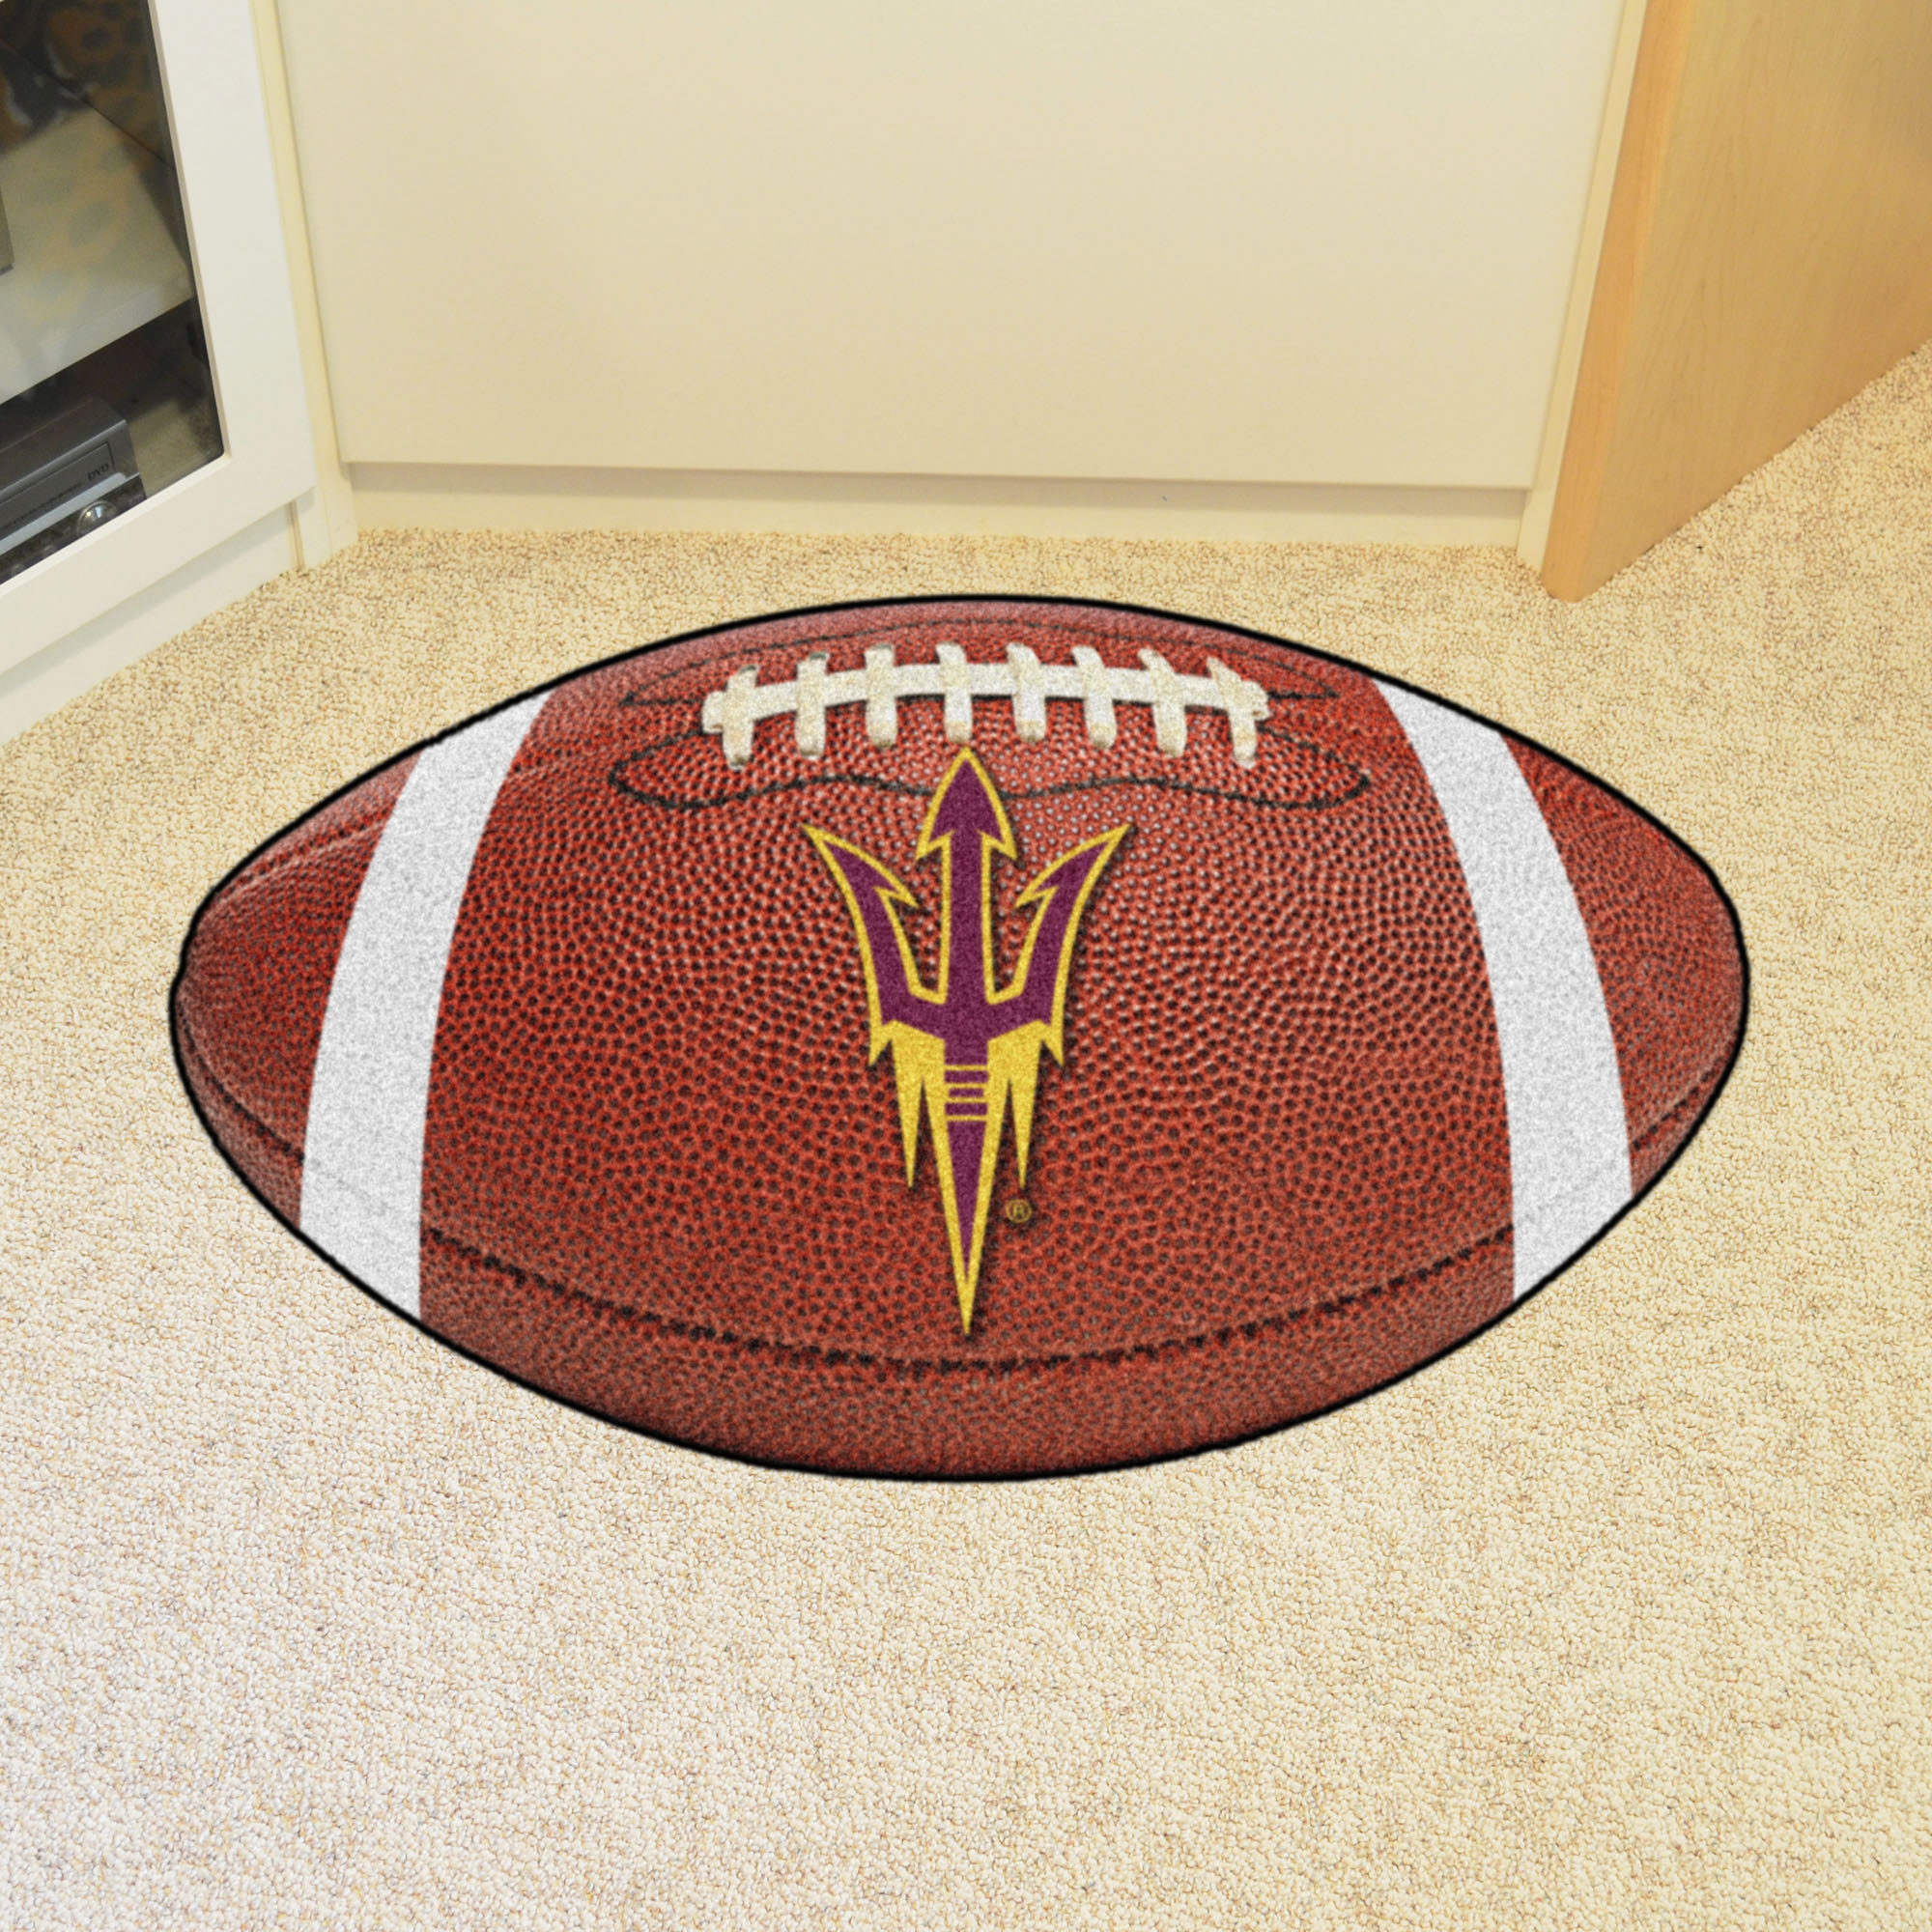 Arizona State University Ball Shaped Area Rugs (Ball Shaped Area Rugs: Football)